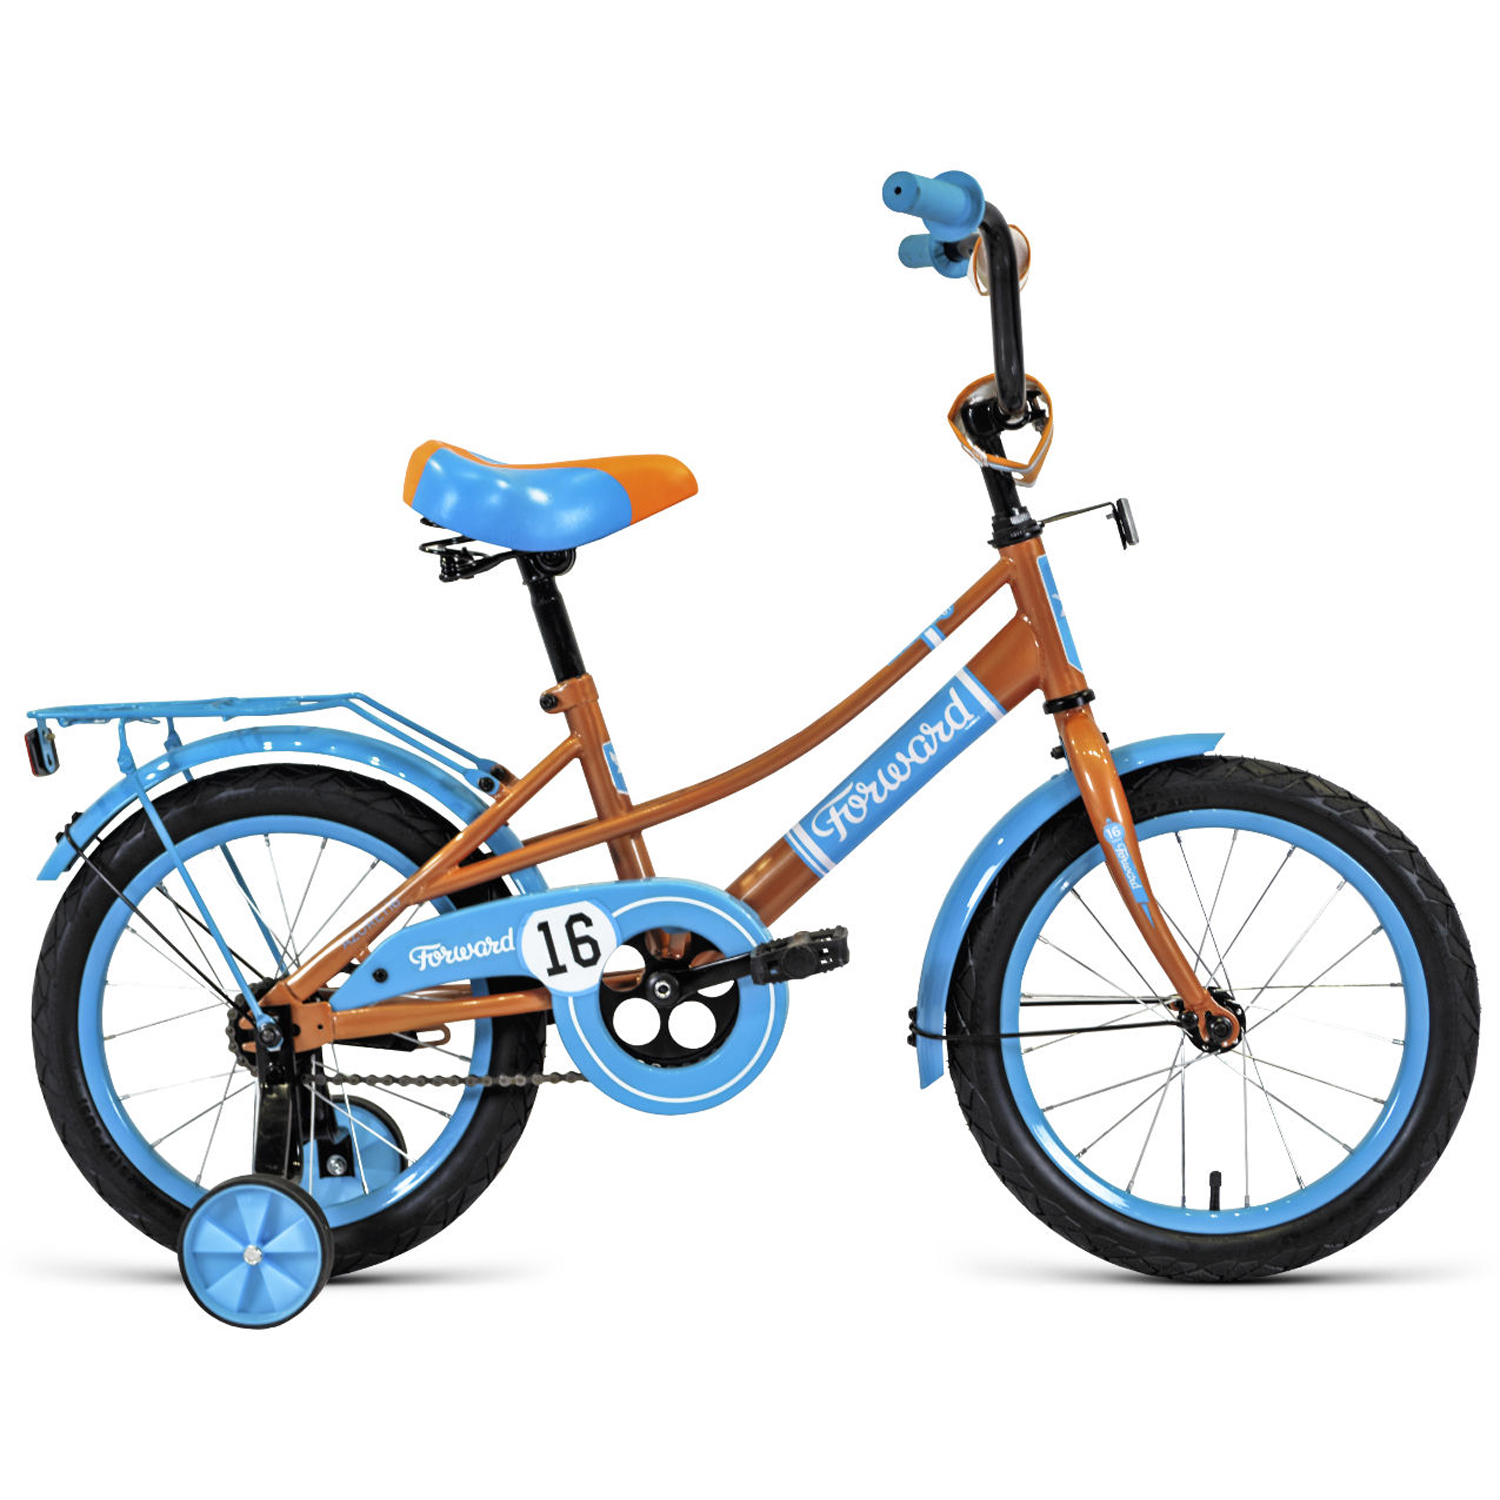 Двухколесный велосипед Forward Azure 16 2021, бежевый/голубой велосипед двухколесный forward cosmo 16 2 0 2021